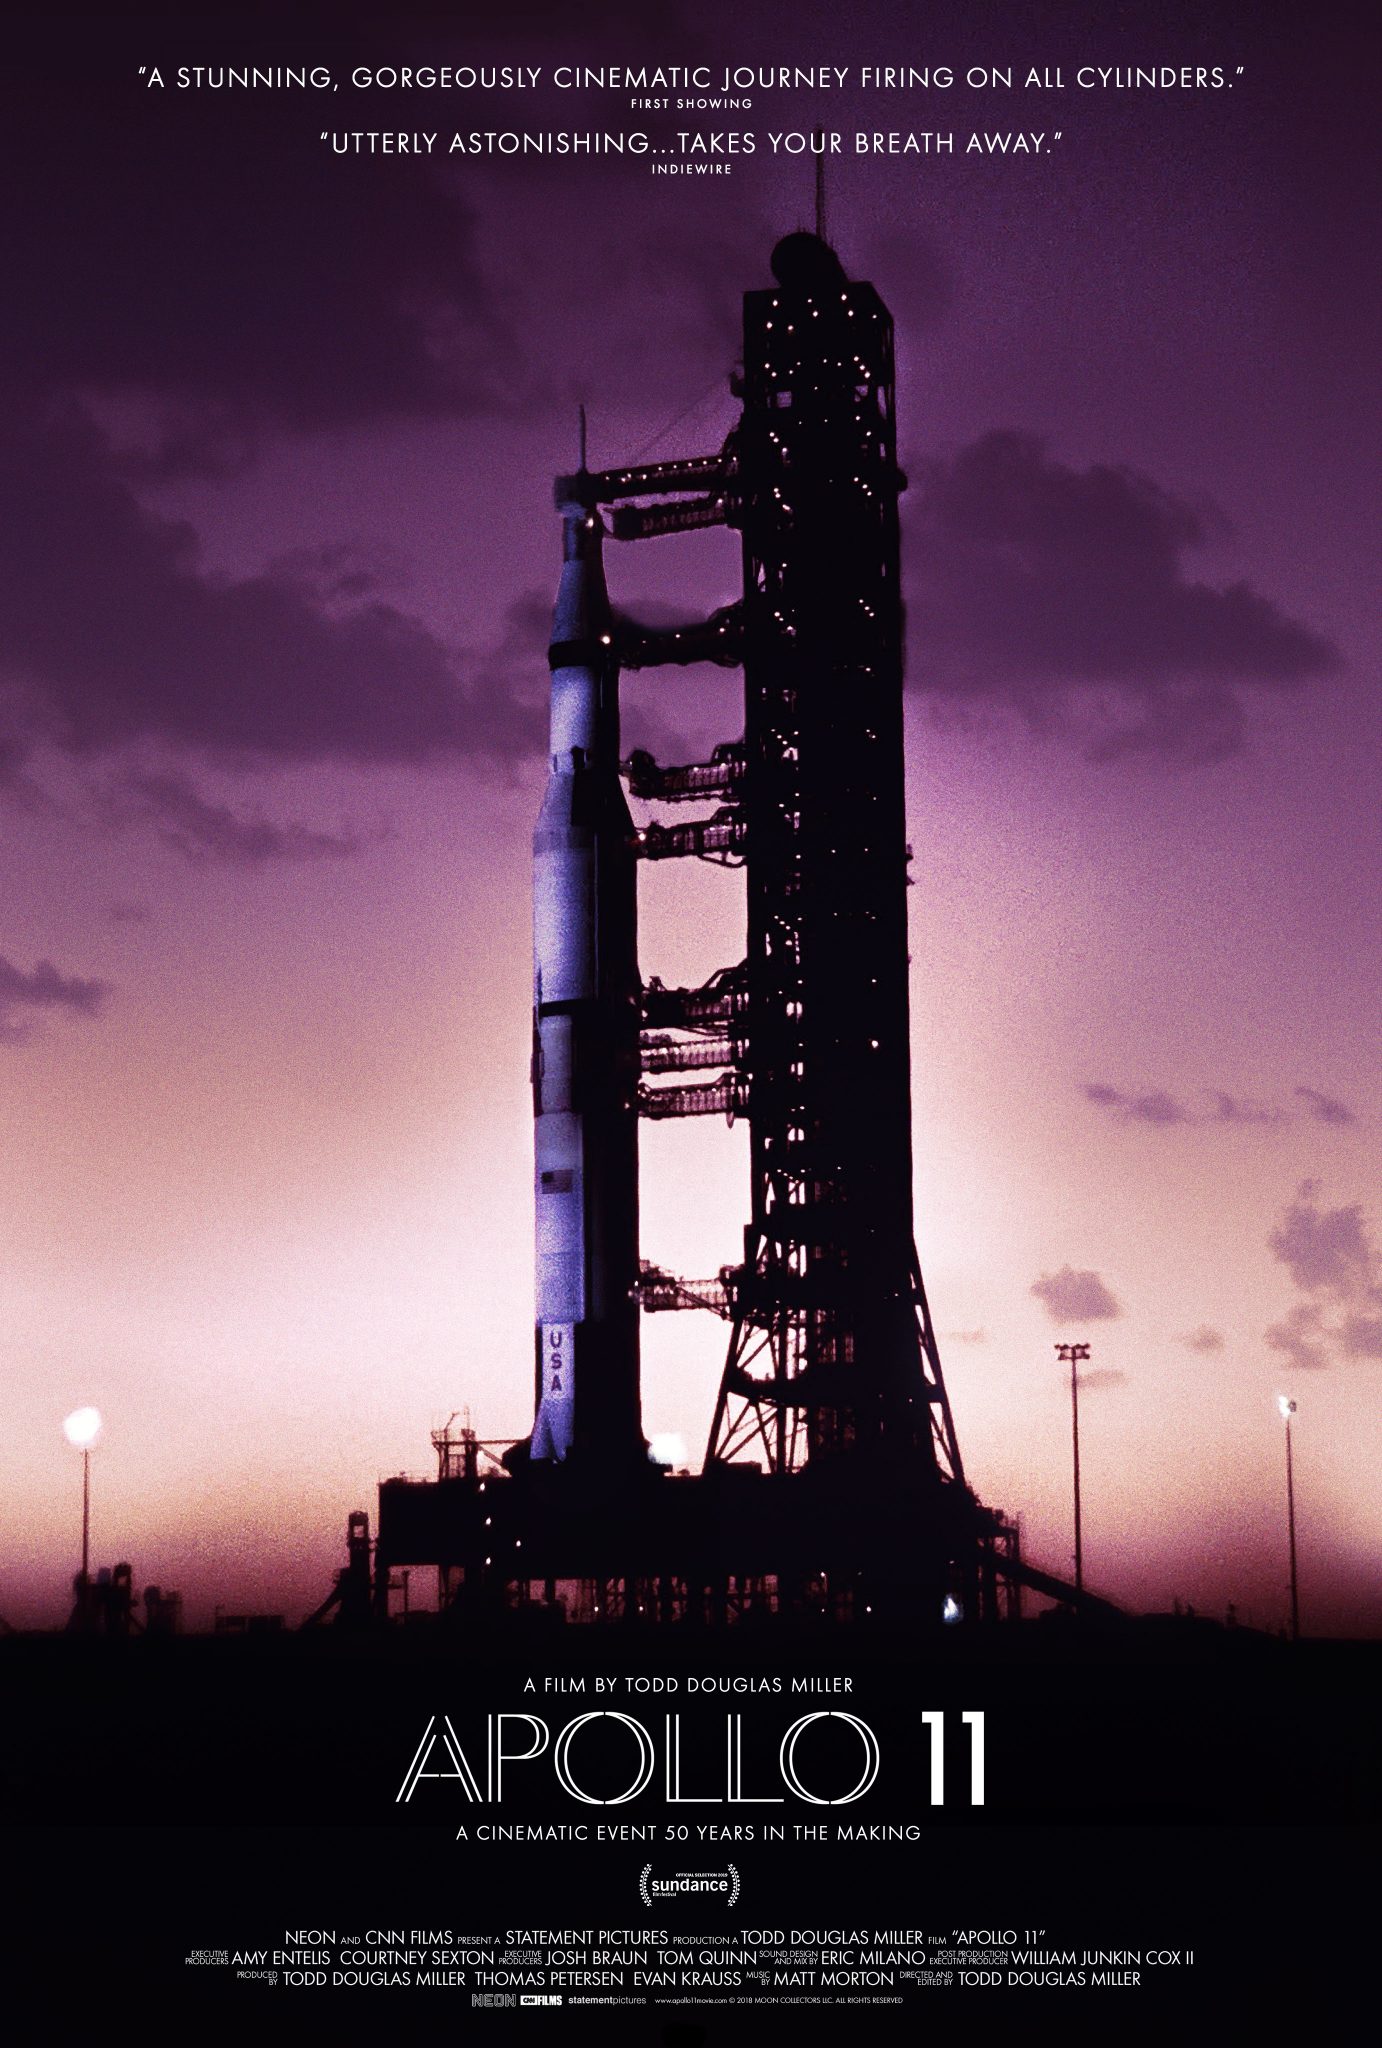 Apollo 11 poster #apollo11 #flyby